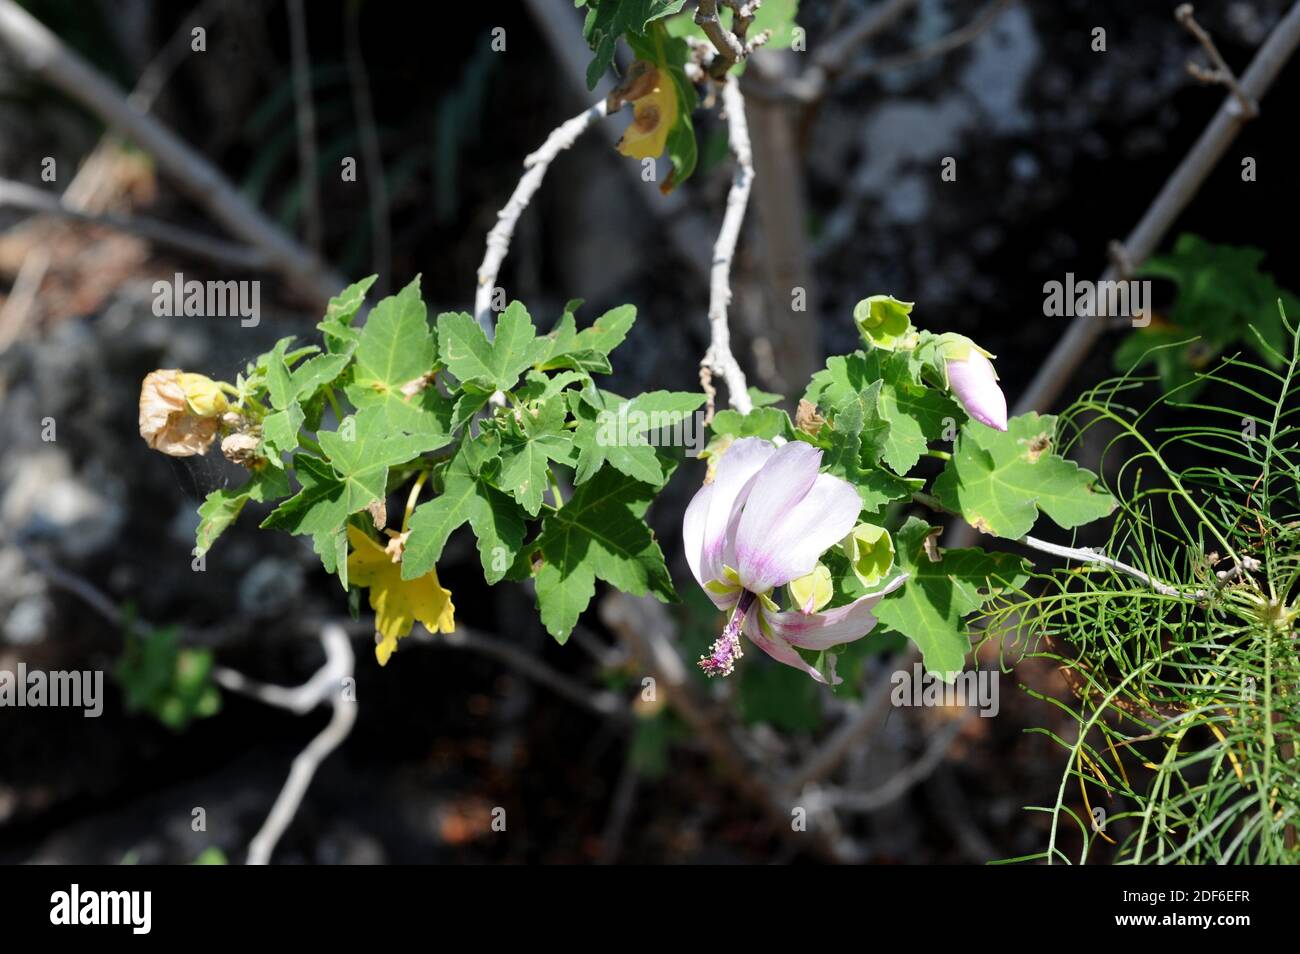 Malva de risco (Lavatera acerifolia) è un arbusto endemico delle Isole Canry, Spagna. Foglie e fiori dettaglio. Foto Stock